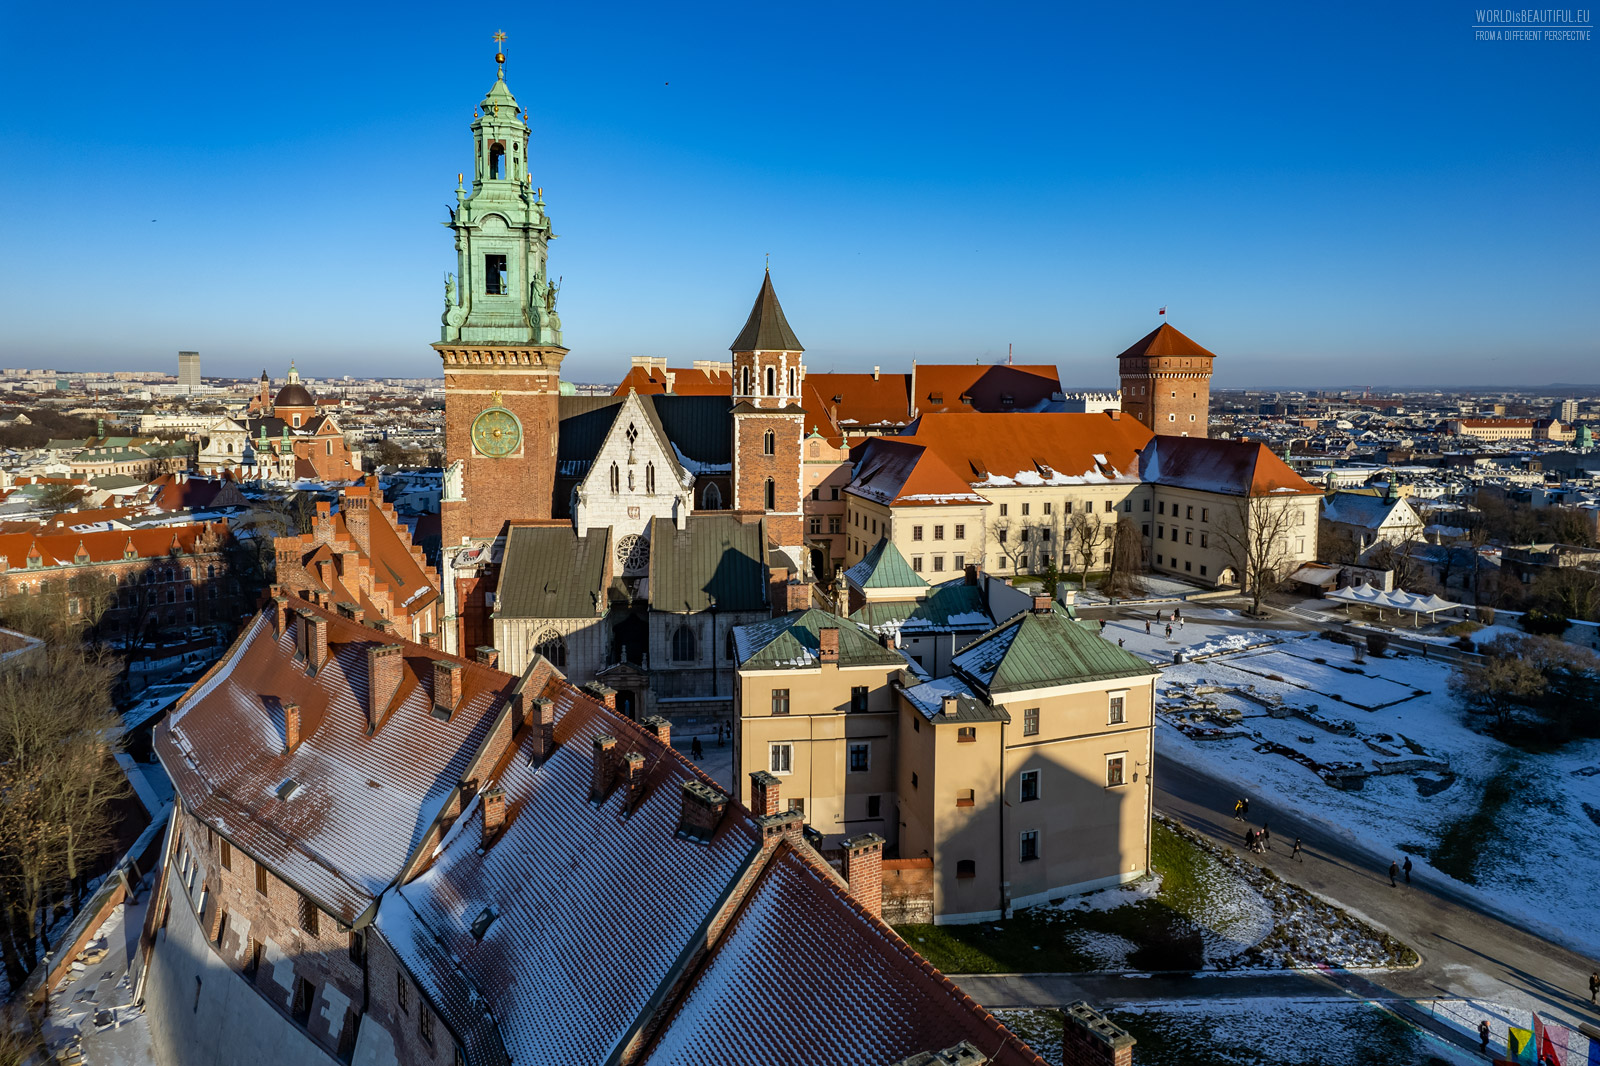 Zdjęcia Wawelu w Krakowie